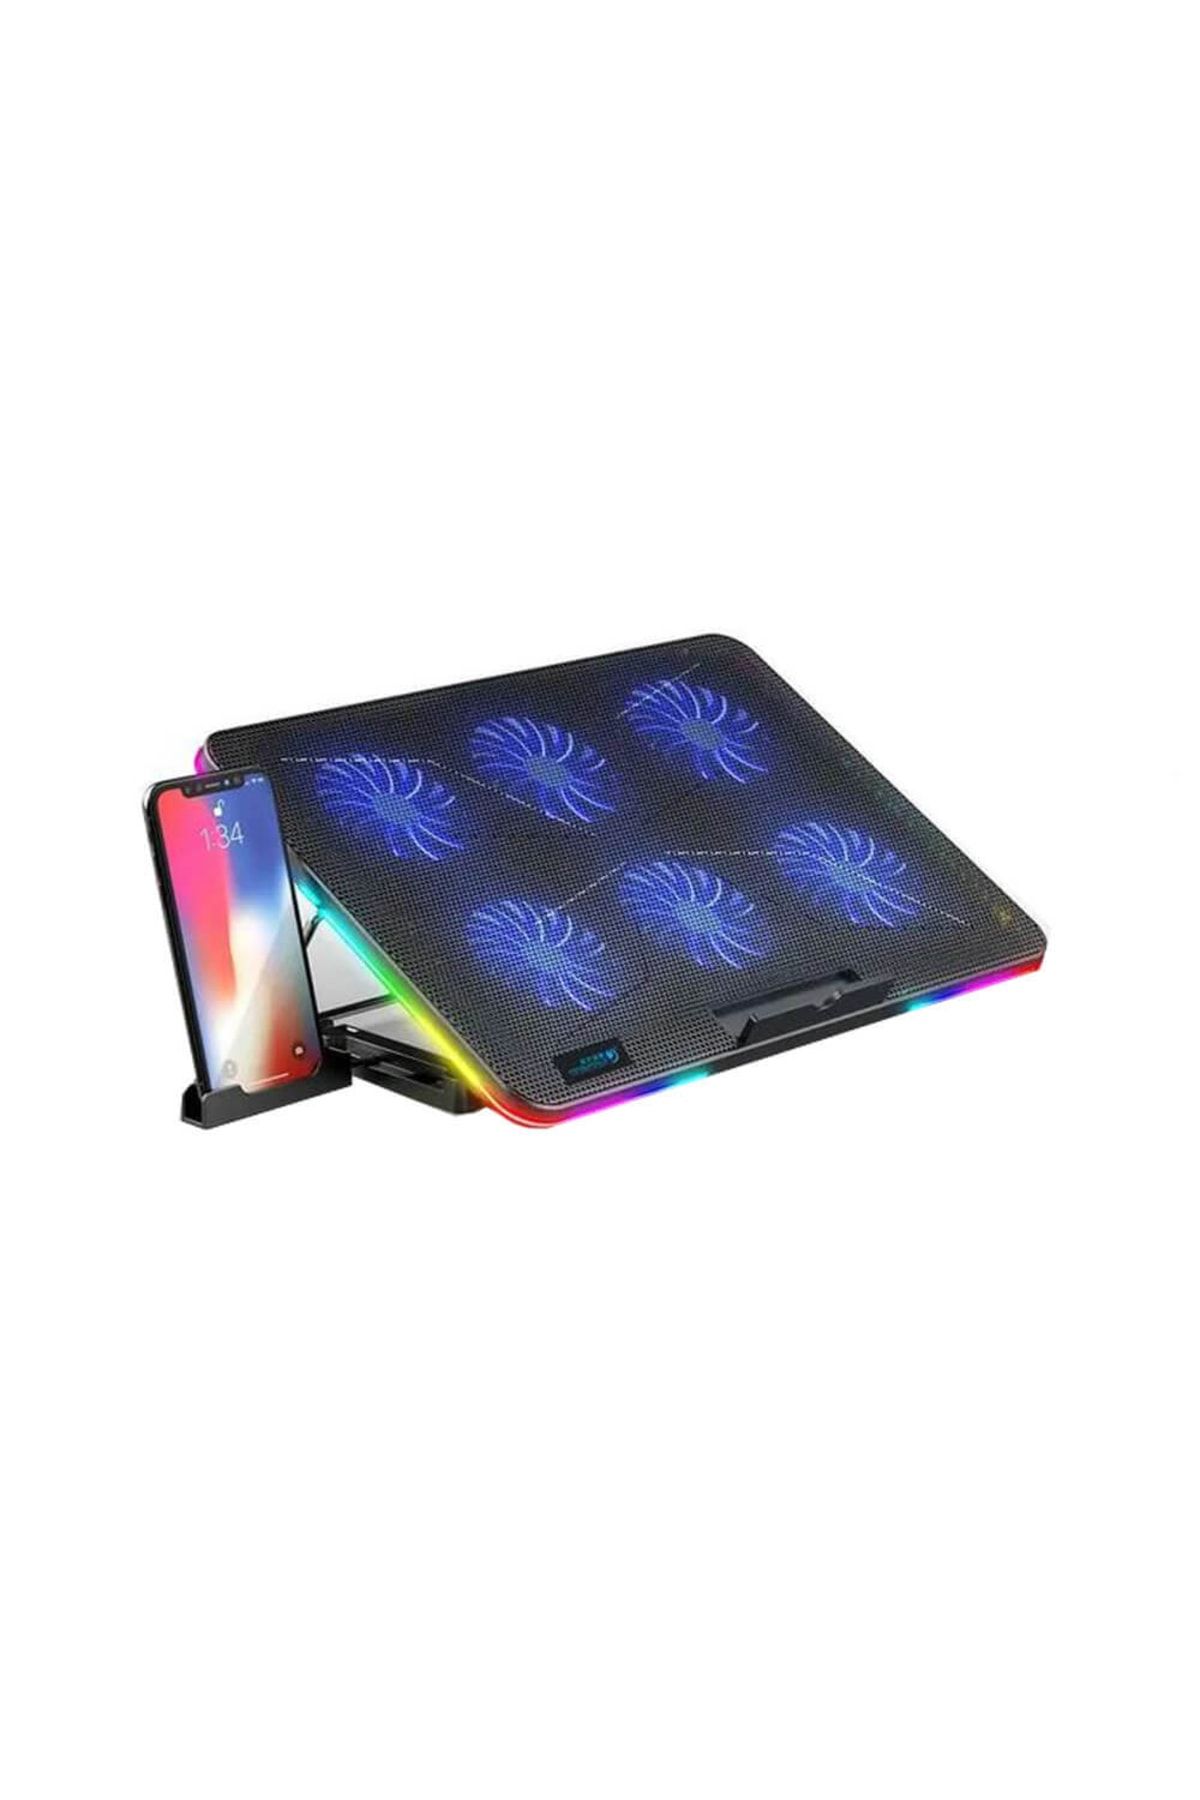 WOZLO Oyuncu Gaming Rgb Laptop Notebook Soğutucu Stand 6 Fanlı 7 Yükseklik Ayarlı Telefon Tutuculu